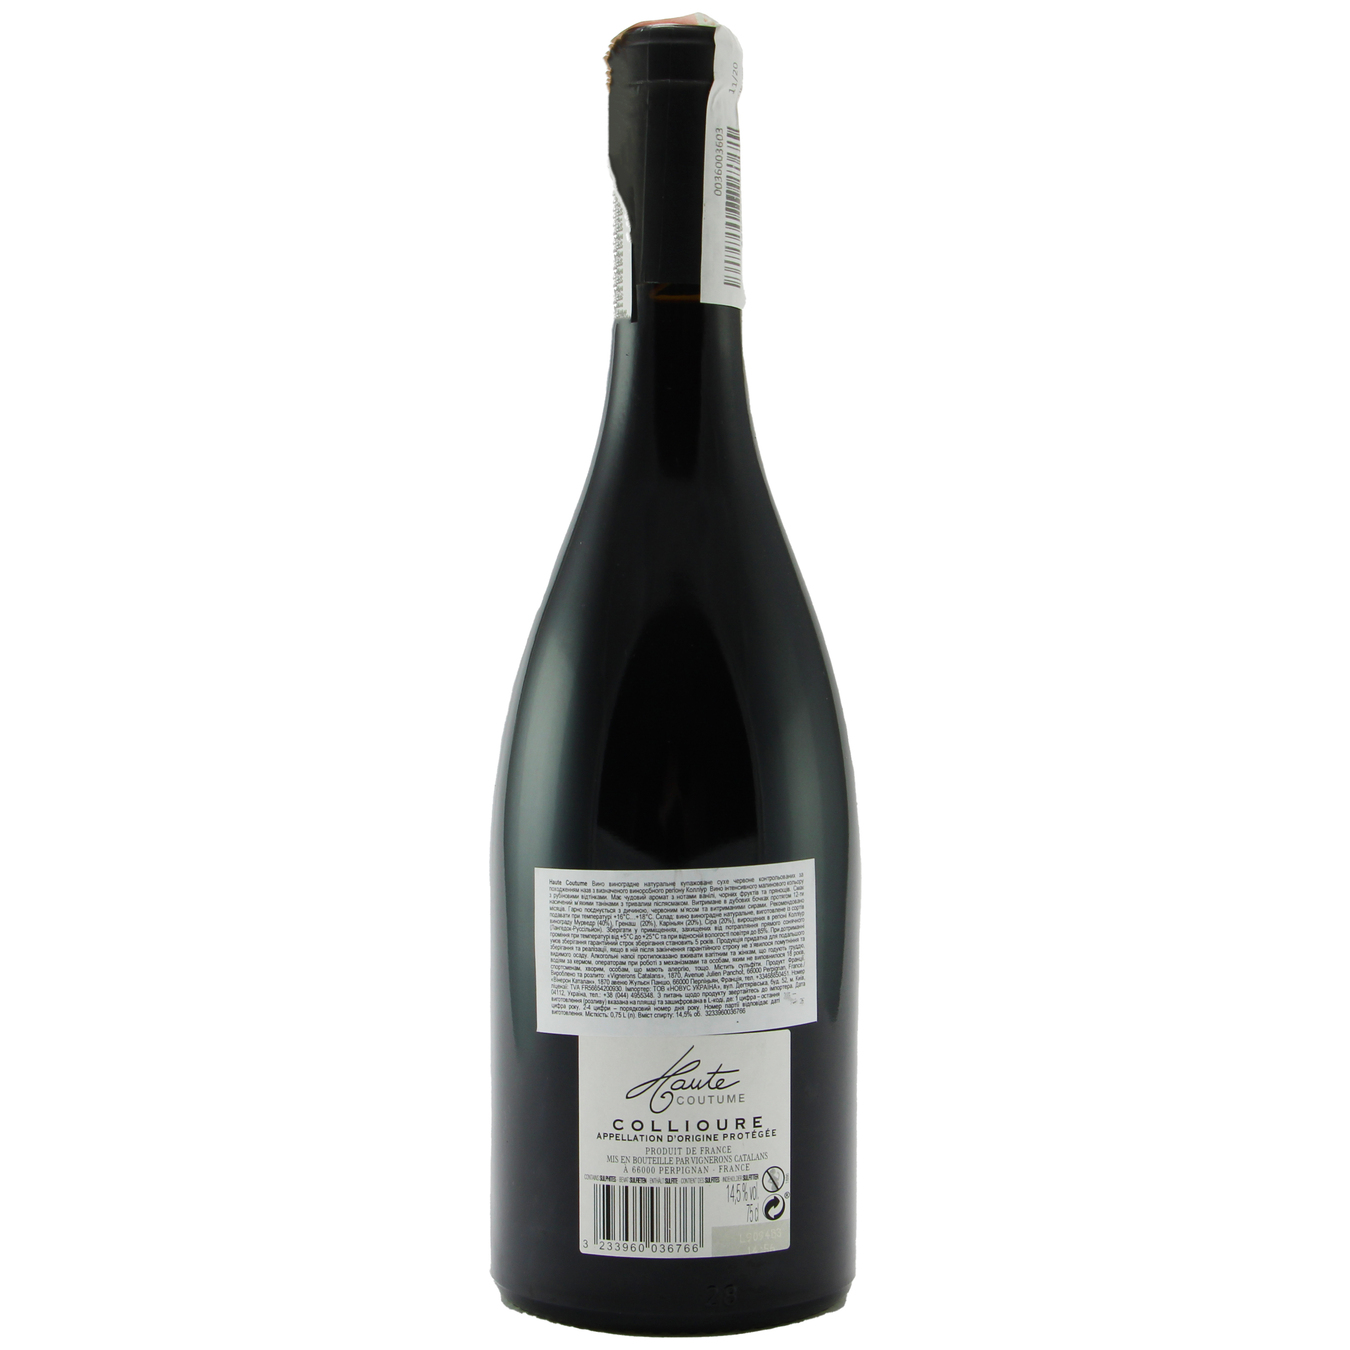 Вино Haute Coutume Collioure червоне сухе 13,5% 0,75л 2